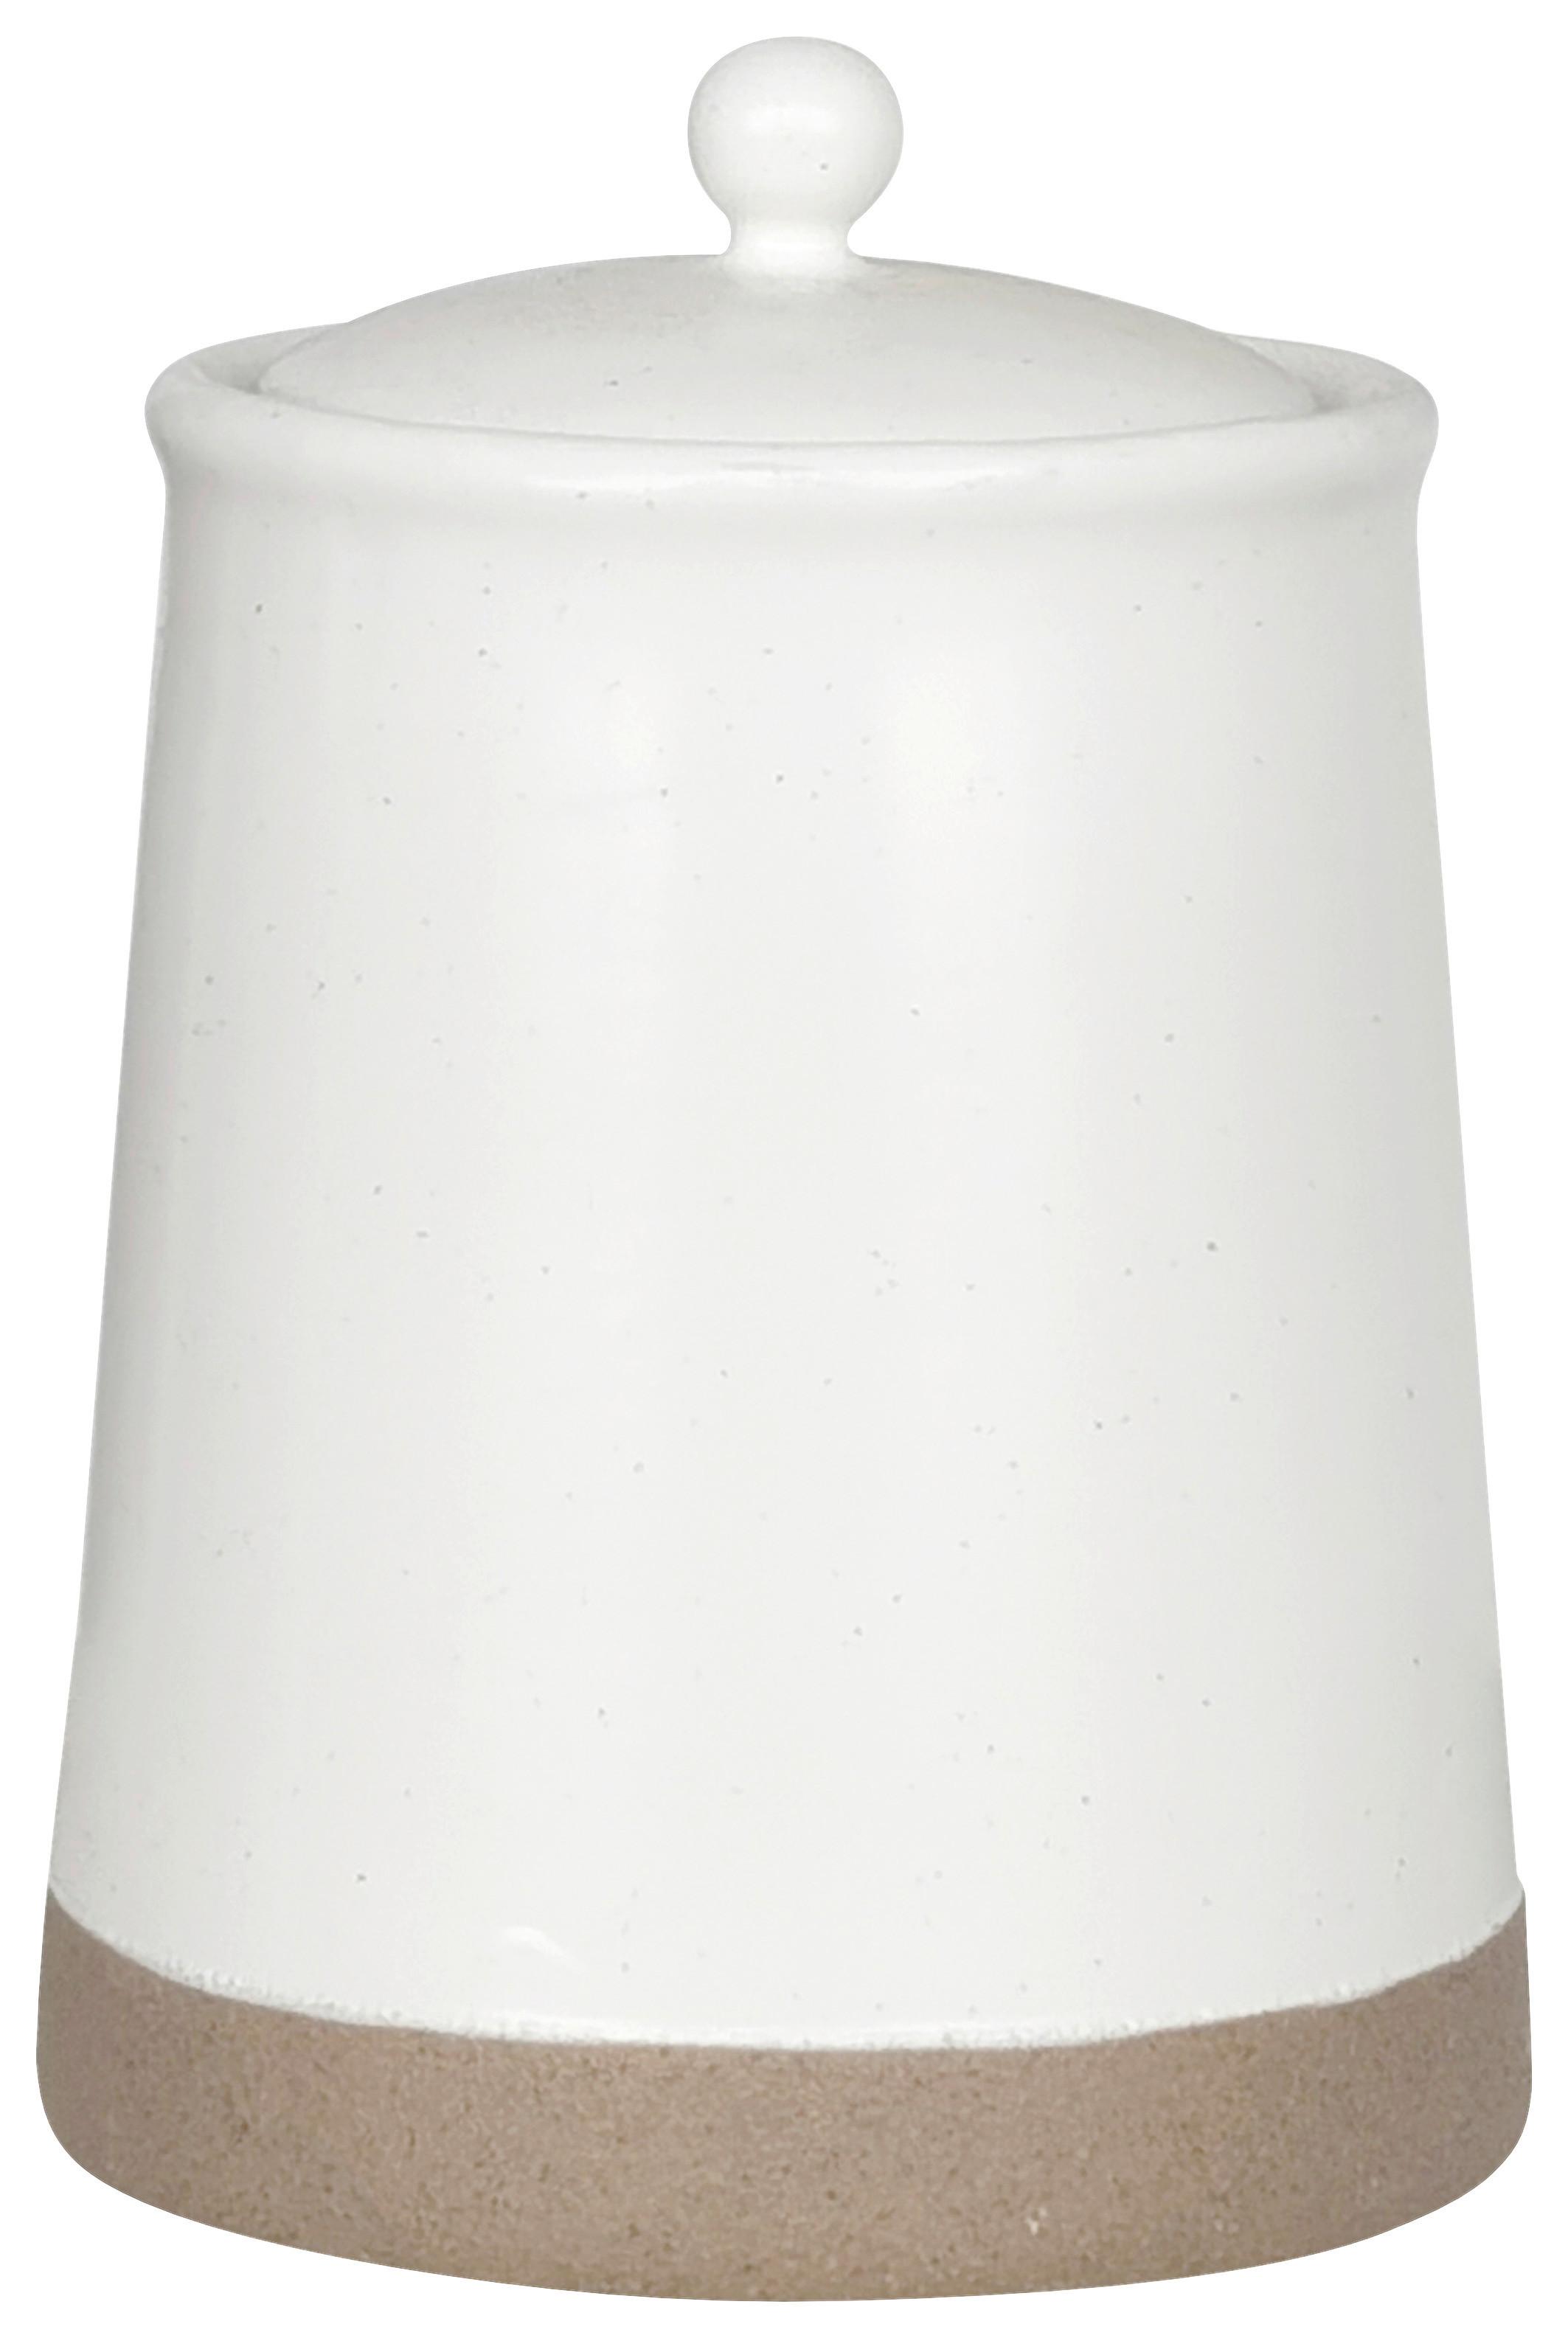 Vorratsdose Emilia ca. 900ml - Weiß, Keramik/Kunststoff (12/17cm) - Zandiara